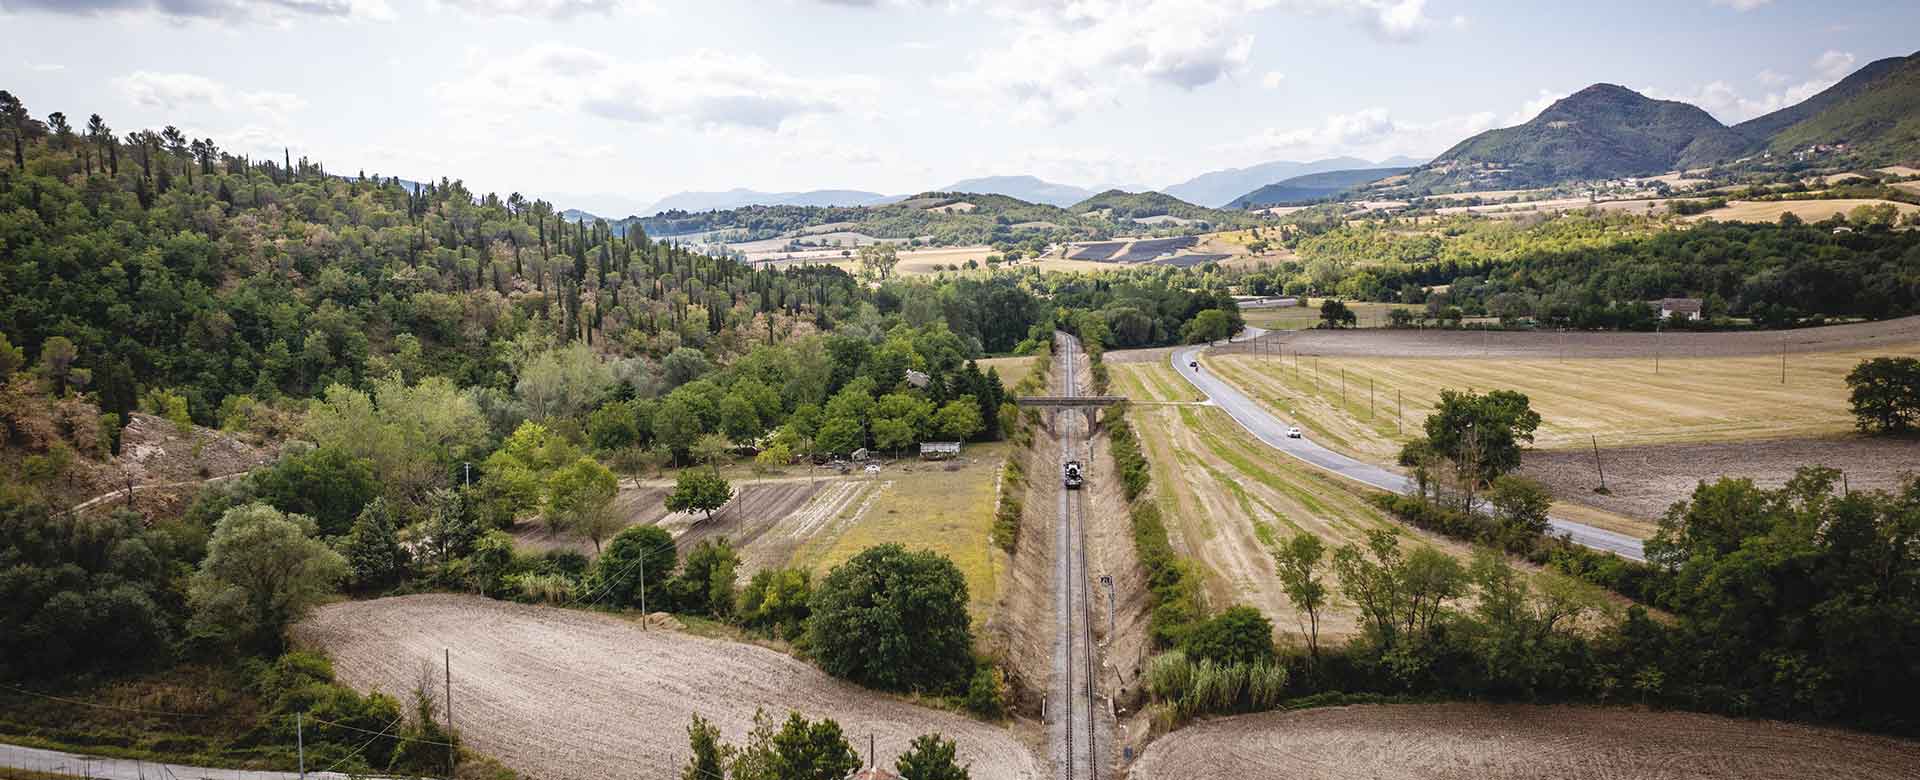 Le pinete del Monte Doglio lungo il rettilineo della ferrovia prima della stazione di Bellisio Solfare (PU)